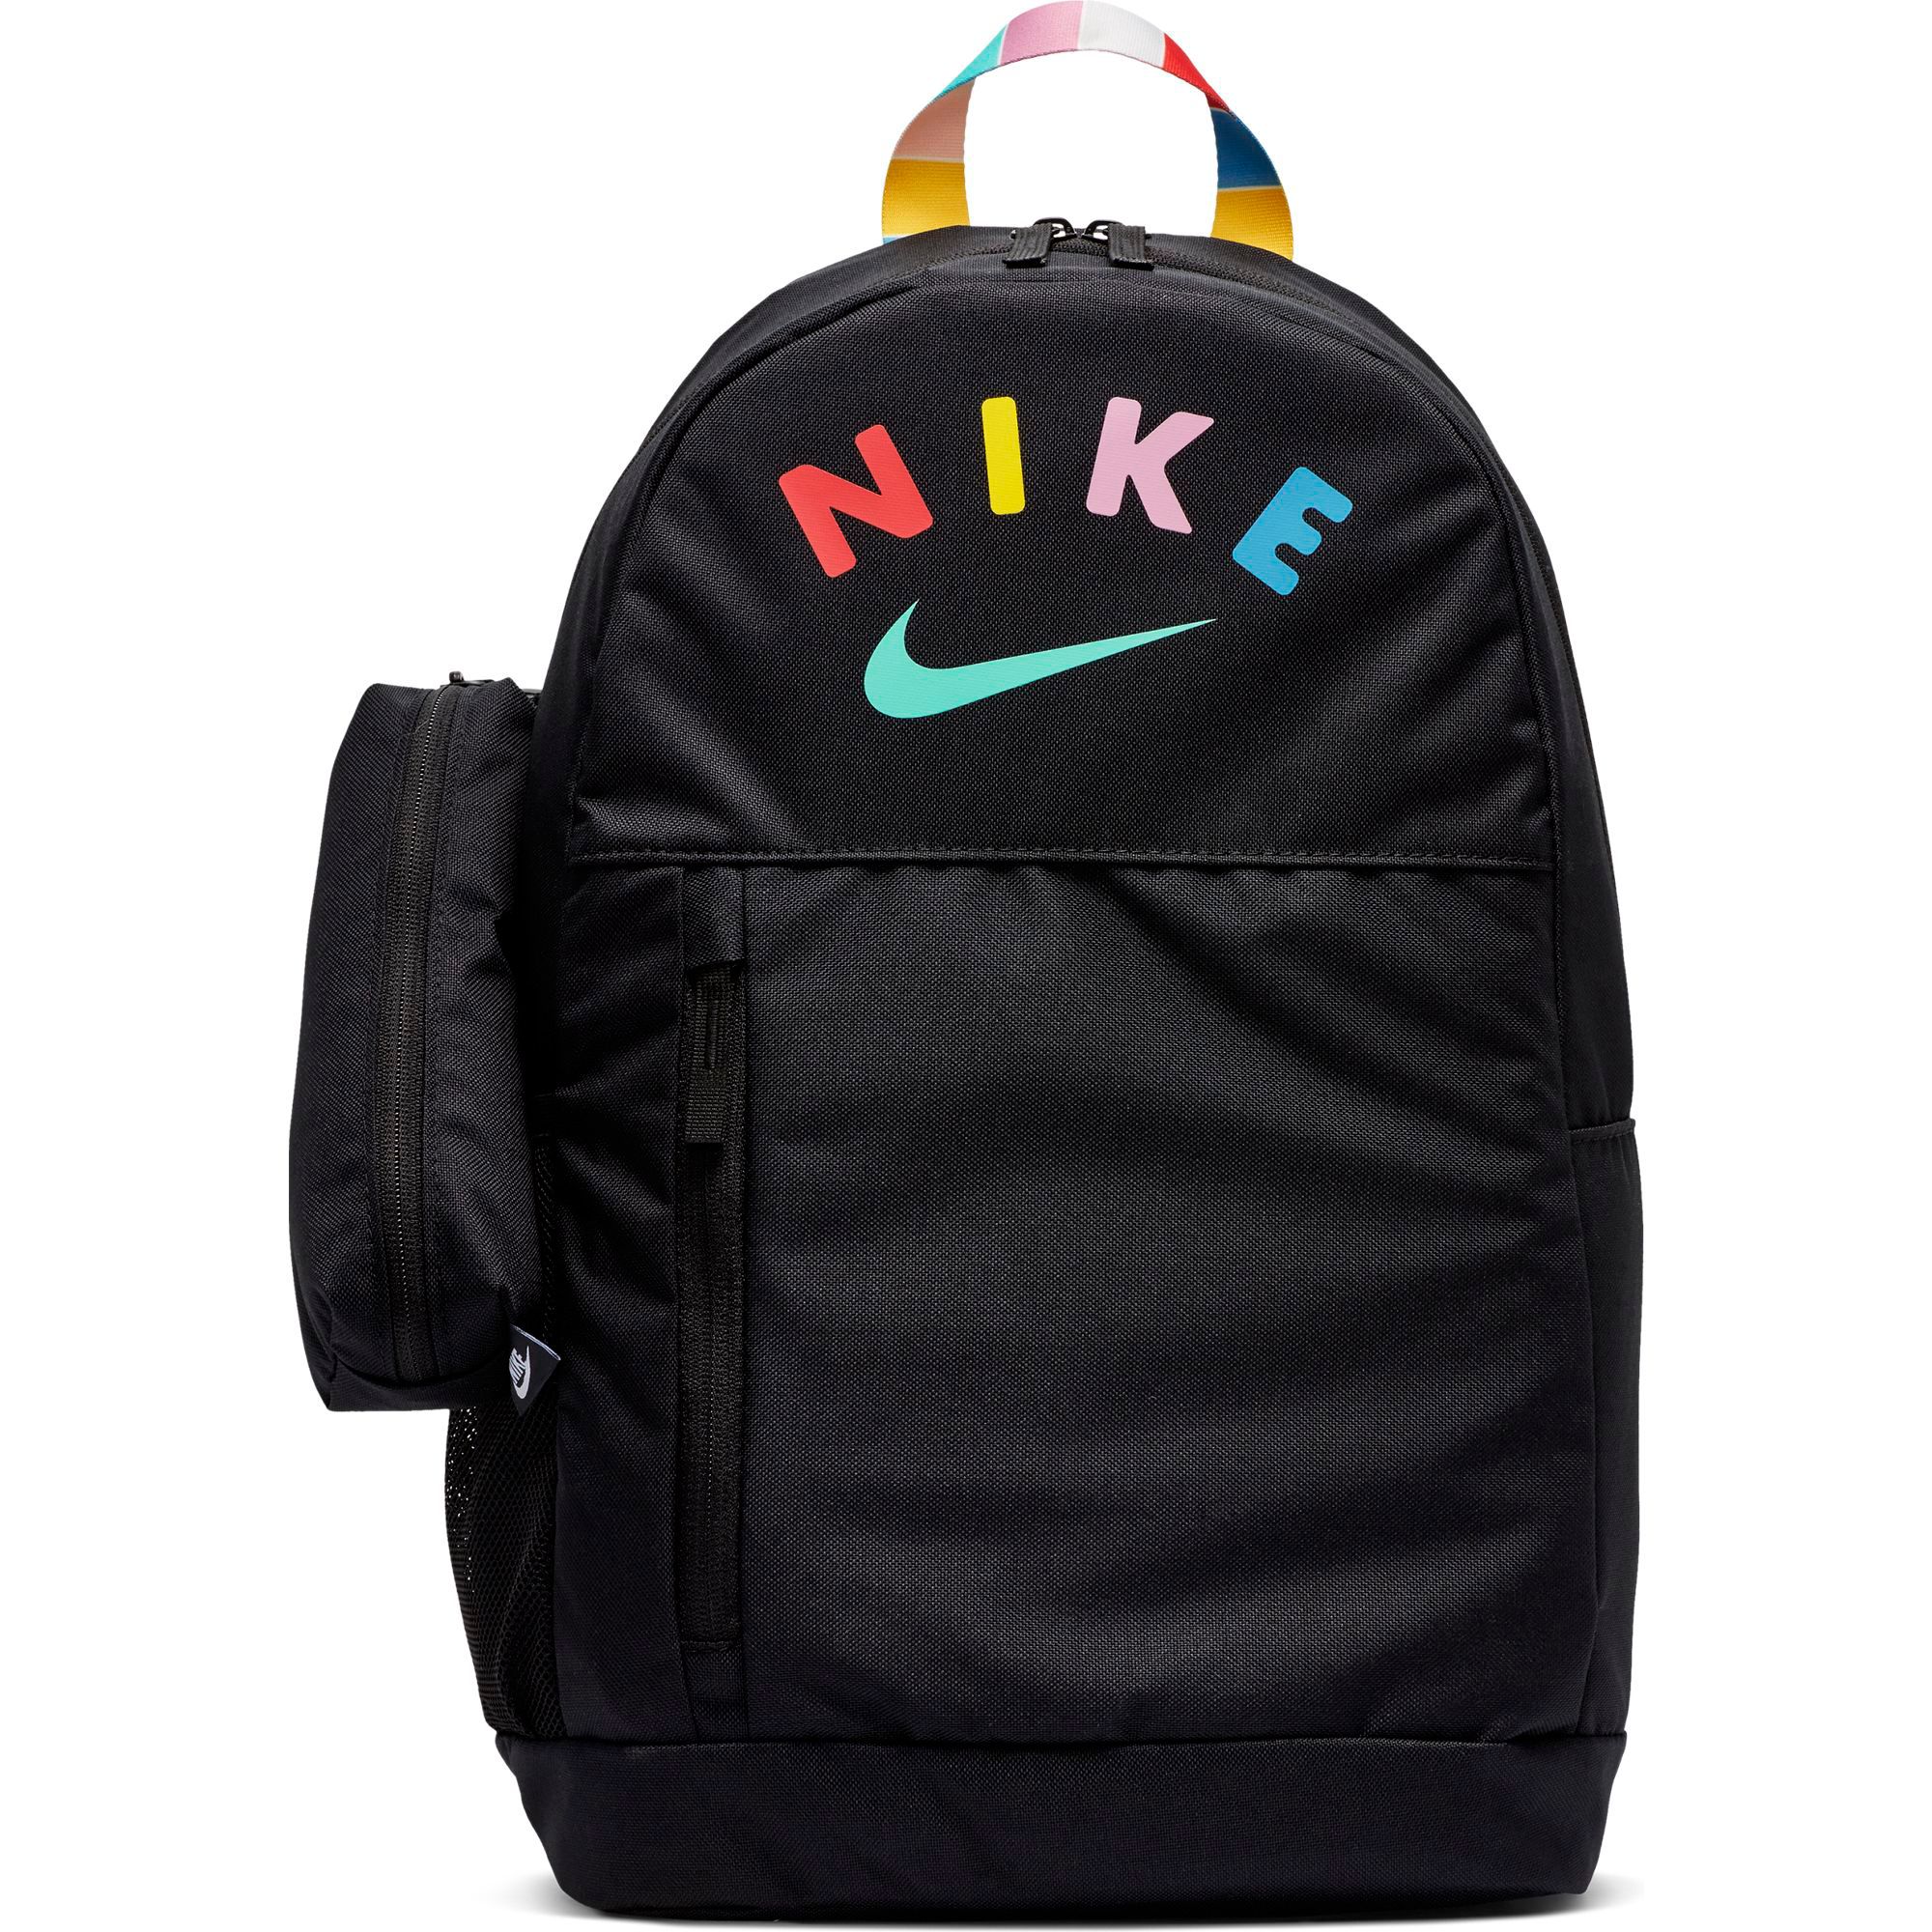 nike backpacks for teen girls